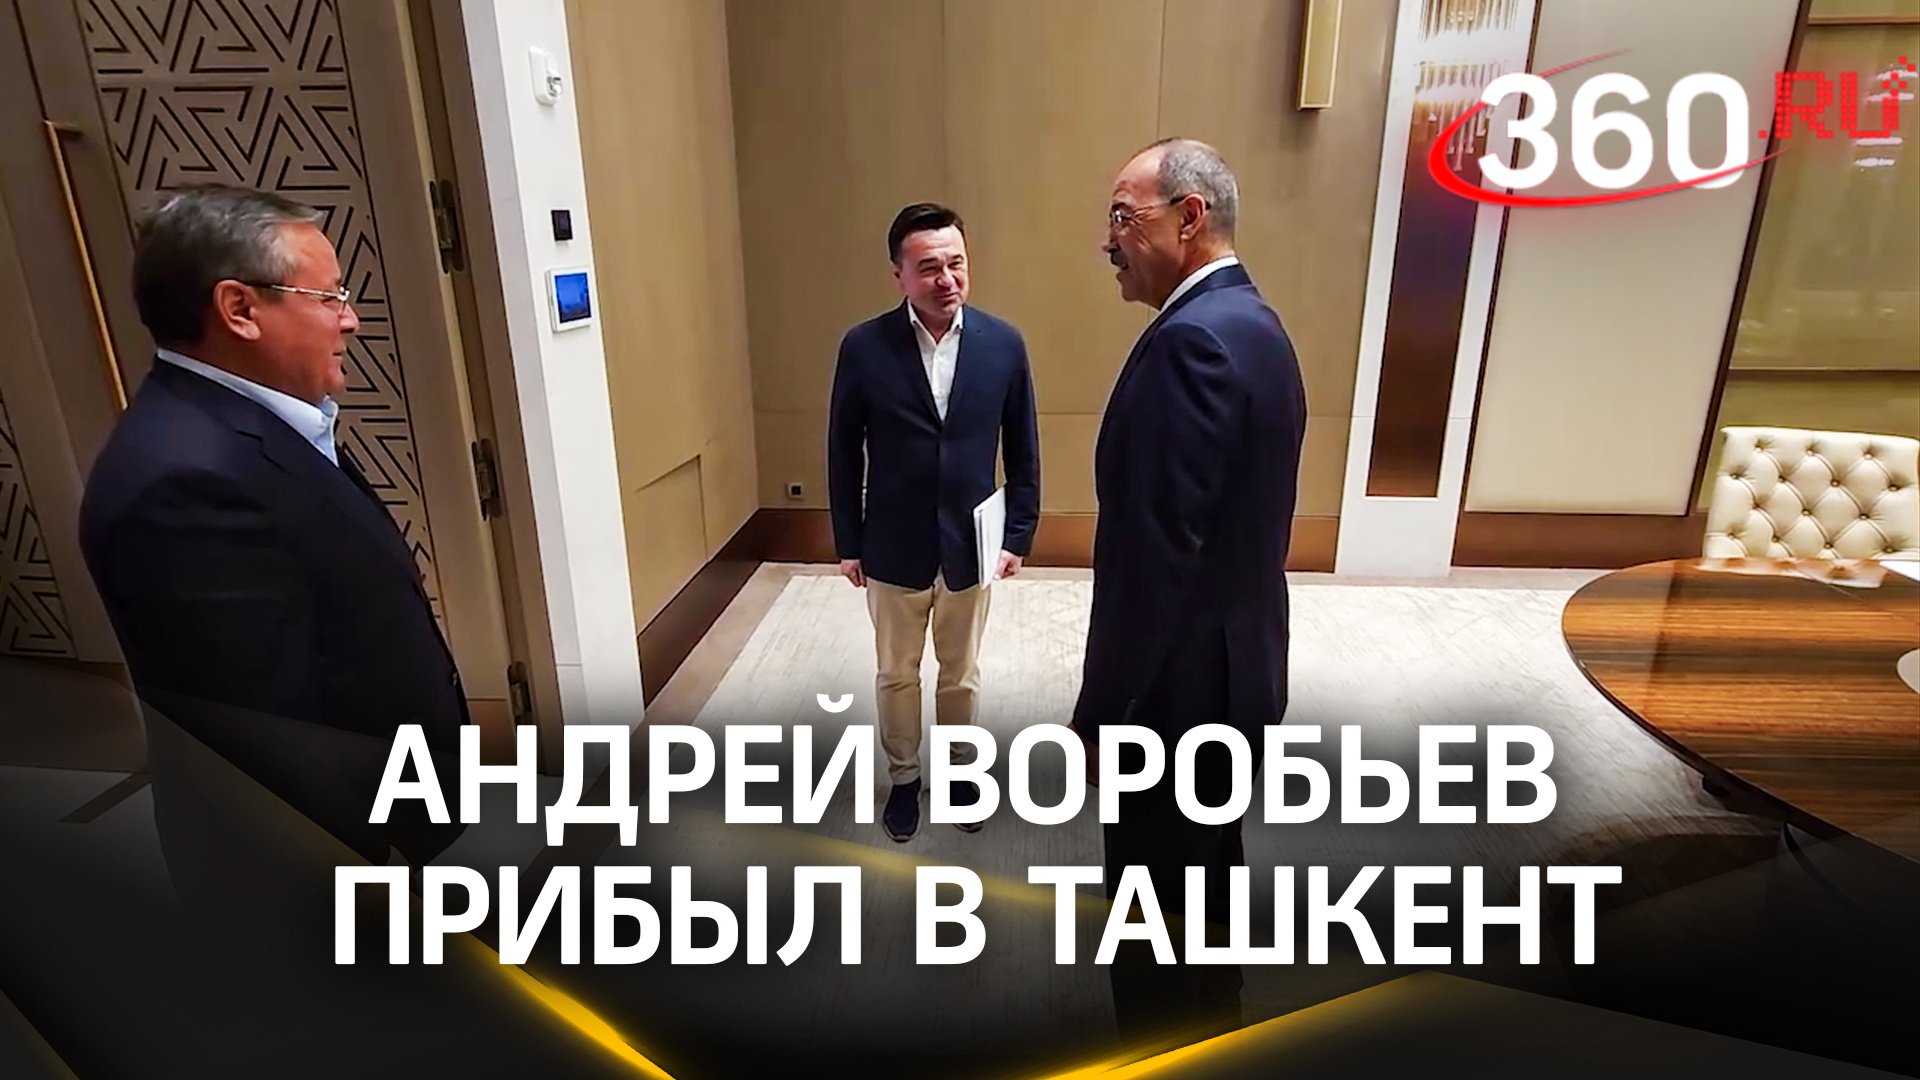 IV Форум межрегионального сотрудничества России и Узбекистана. Андрей Воробьев прибыл в Ташкент